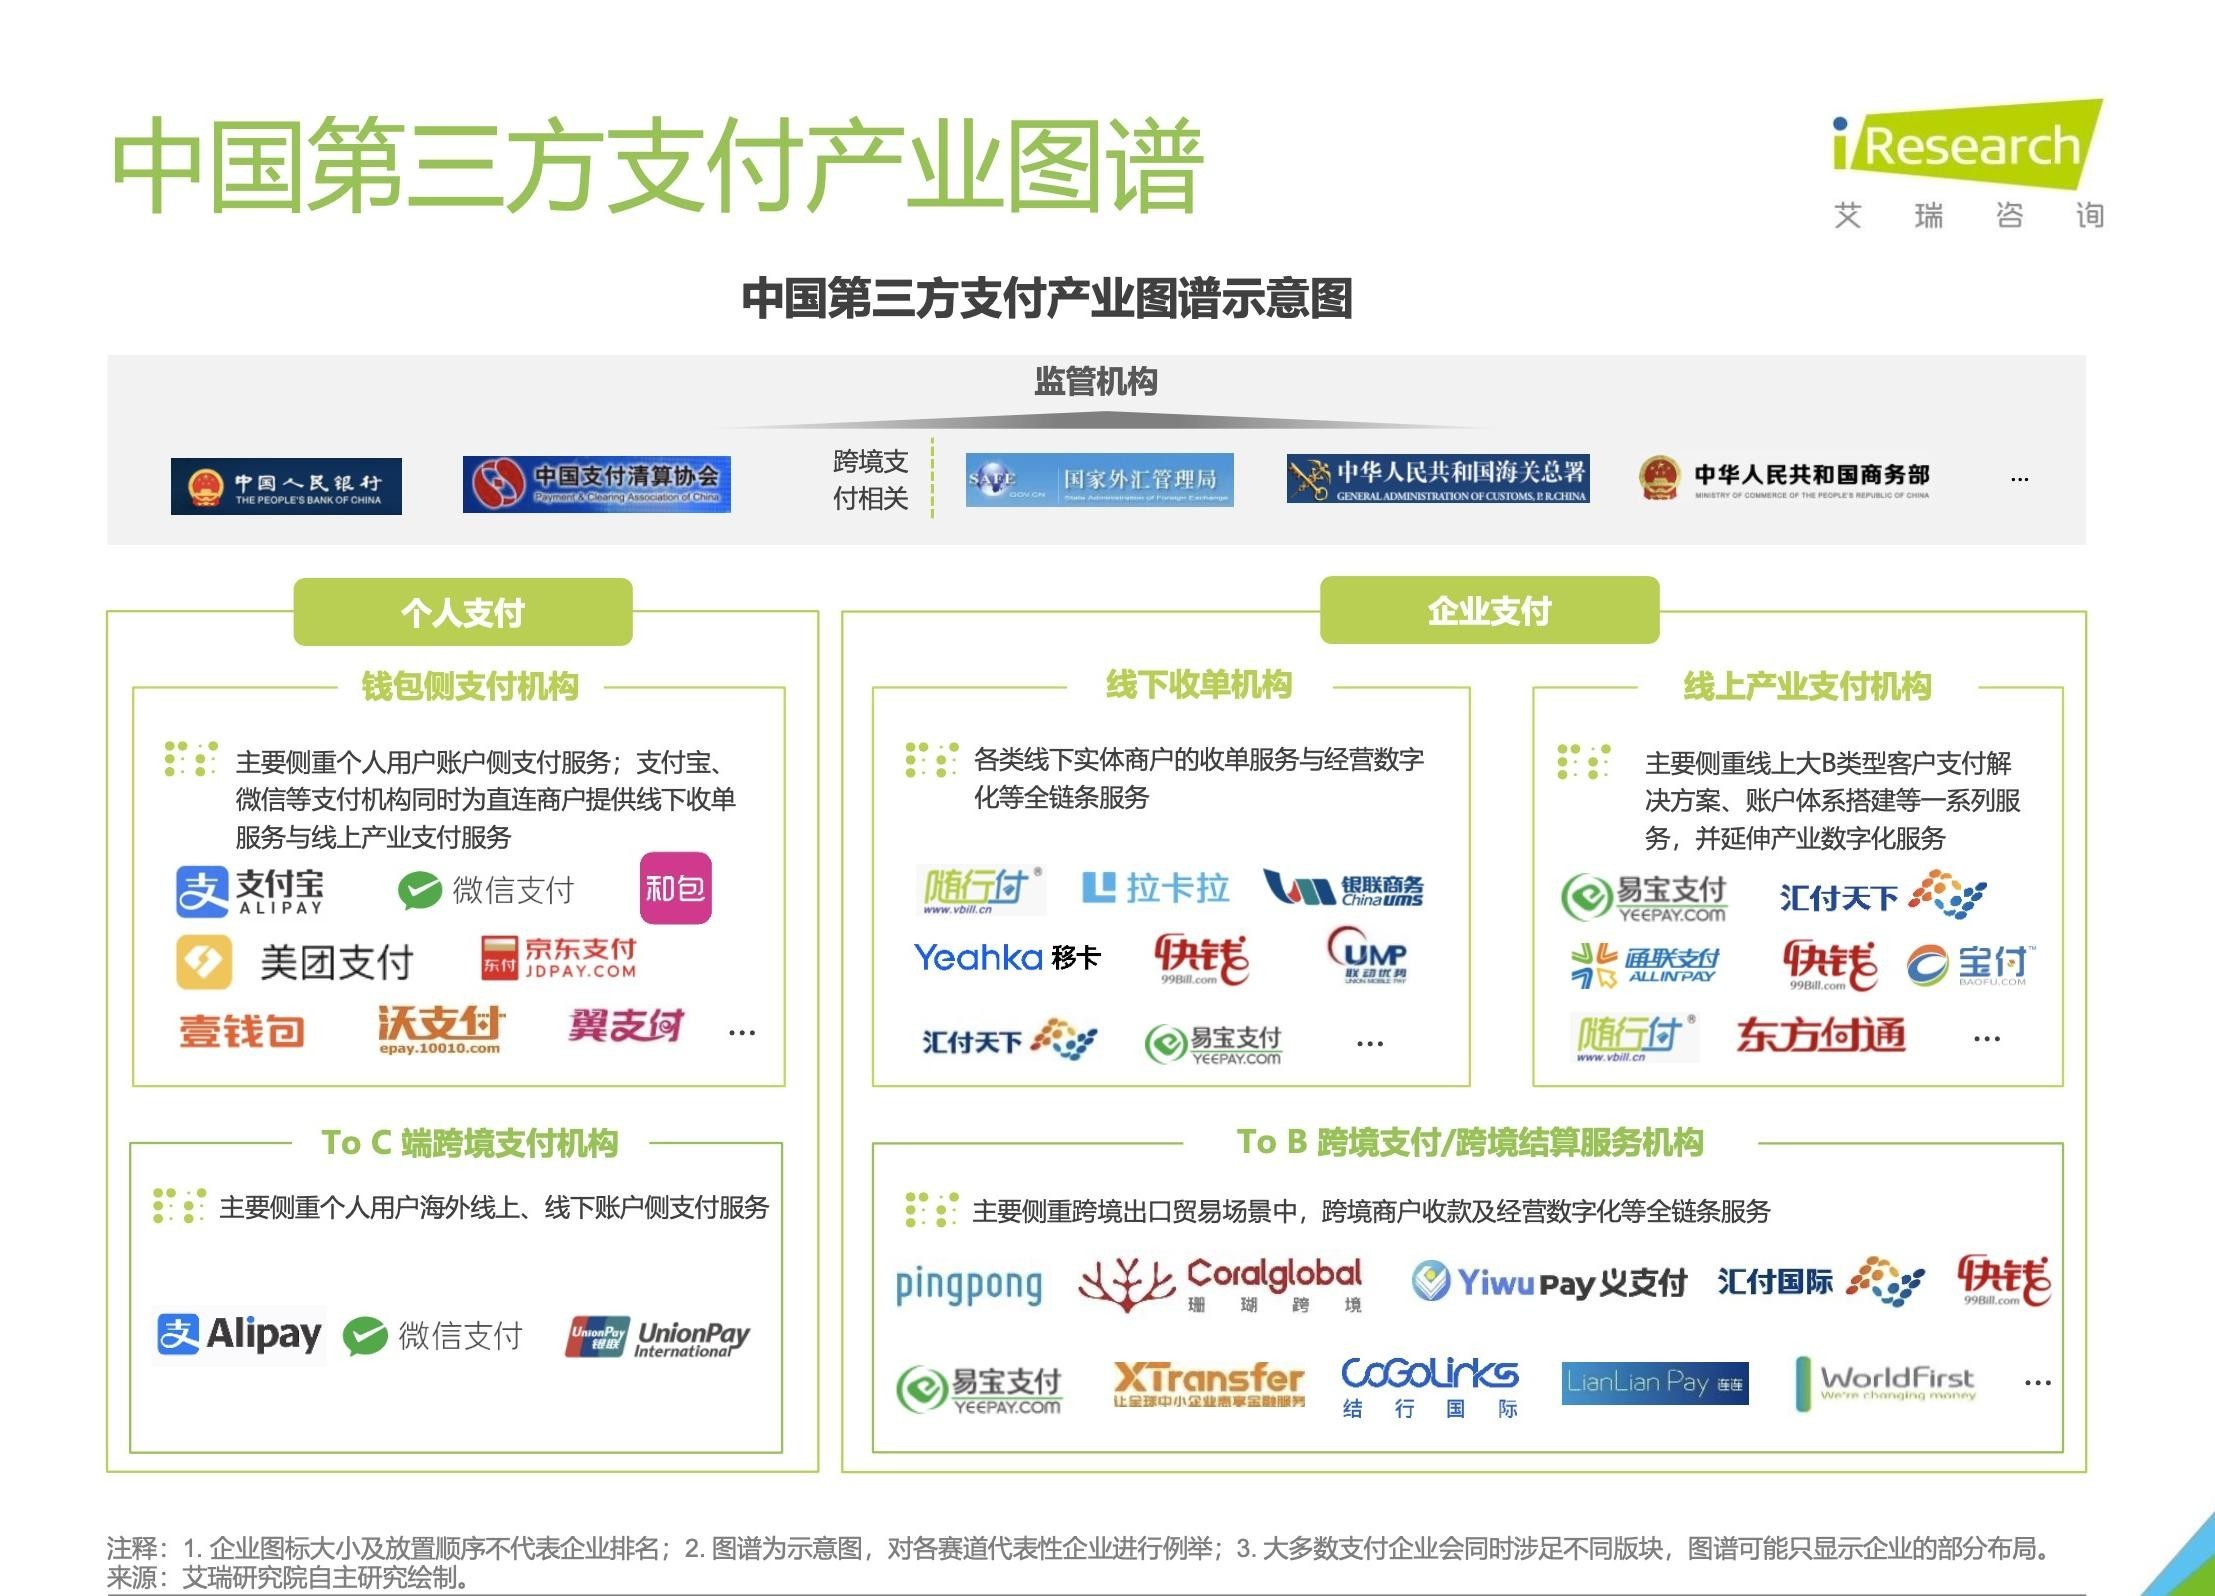 新浦京8883《中国第三方支付行业研究报告》发布 随行付布局数字化支付服务平台(图1)